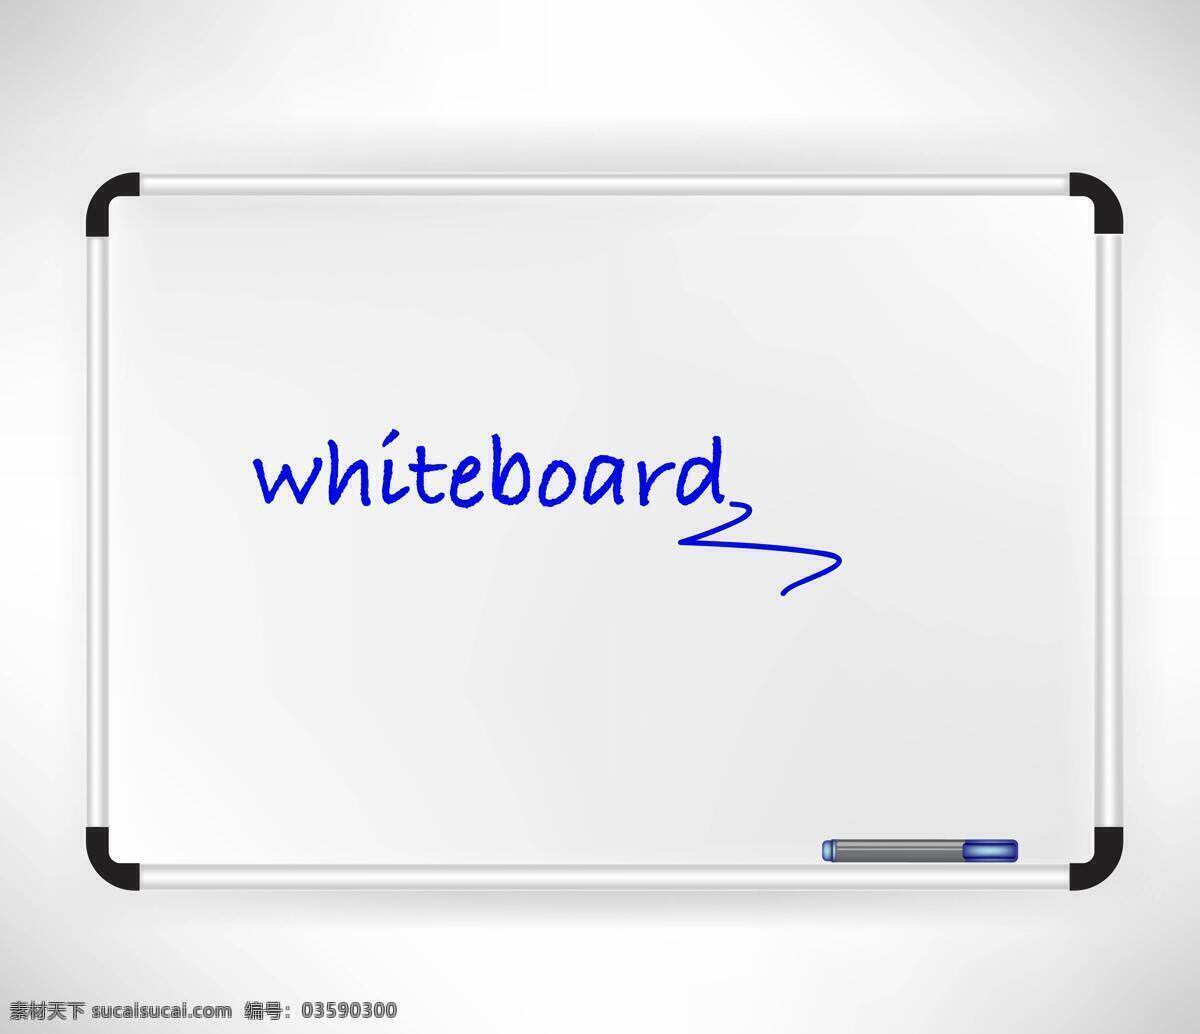 会议 展示 面板 矢量 白板 架 展示面板 水性笔 矢量图 其他矢量图